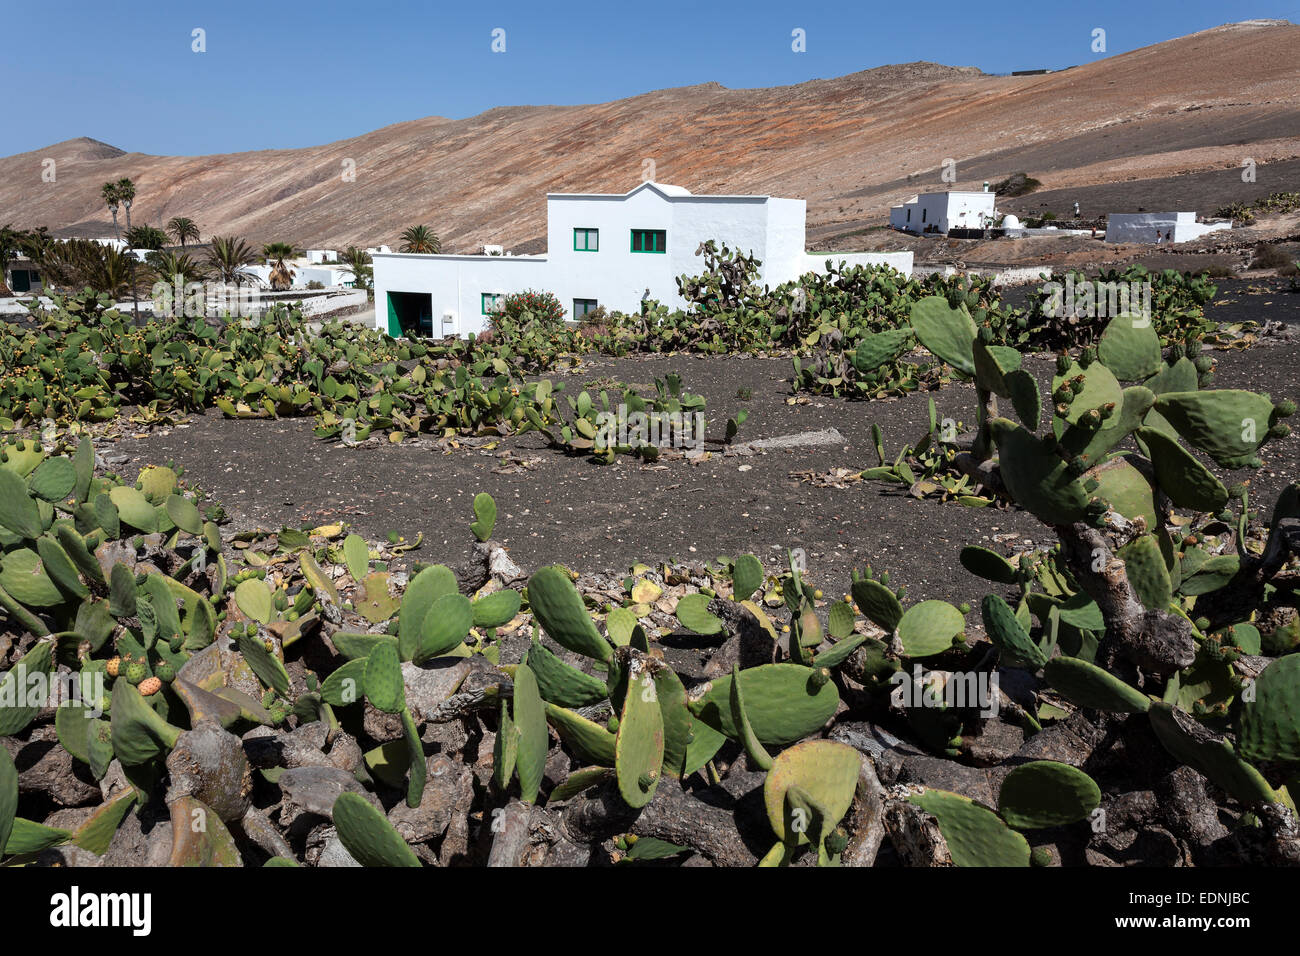 Campo de cactus, cactus Opuntia (Opuntia), edificios de Femes y Los Ajaches montañas en la parte de atrás, Lanzarote, Islas Canarias Foto de stock